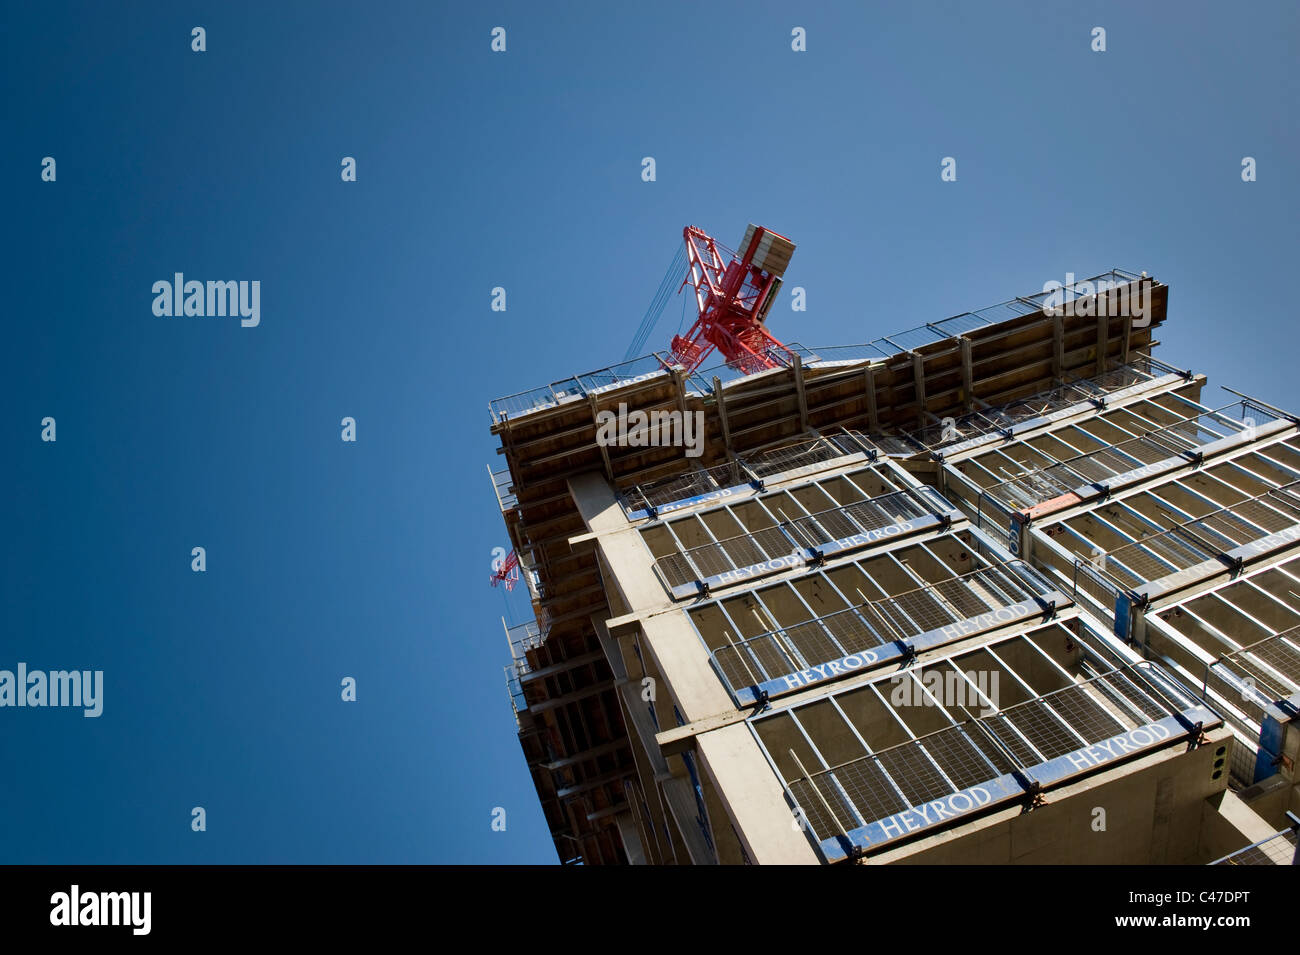 Un bâtiment en construction par la société Heyrod, tourné avec une grue contre un ciel sans nuages bleu clair. Banque D'Images